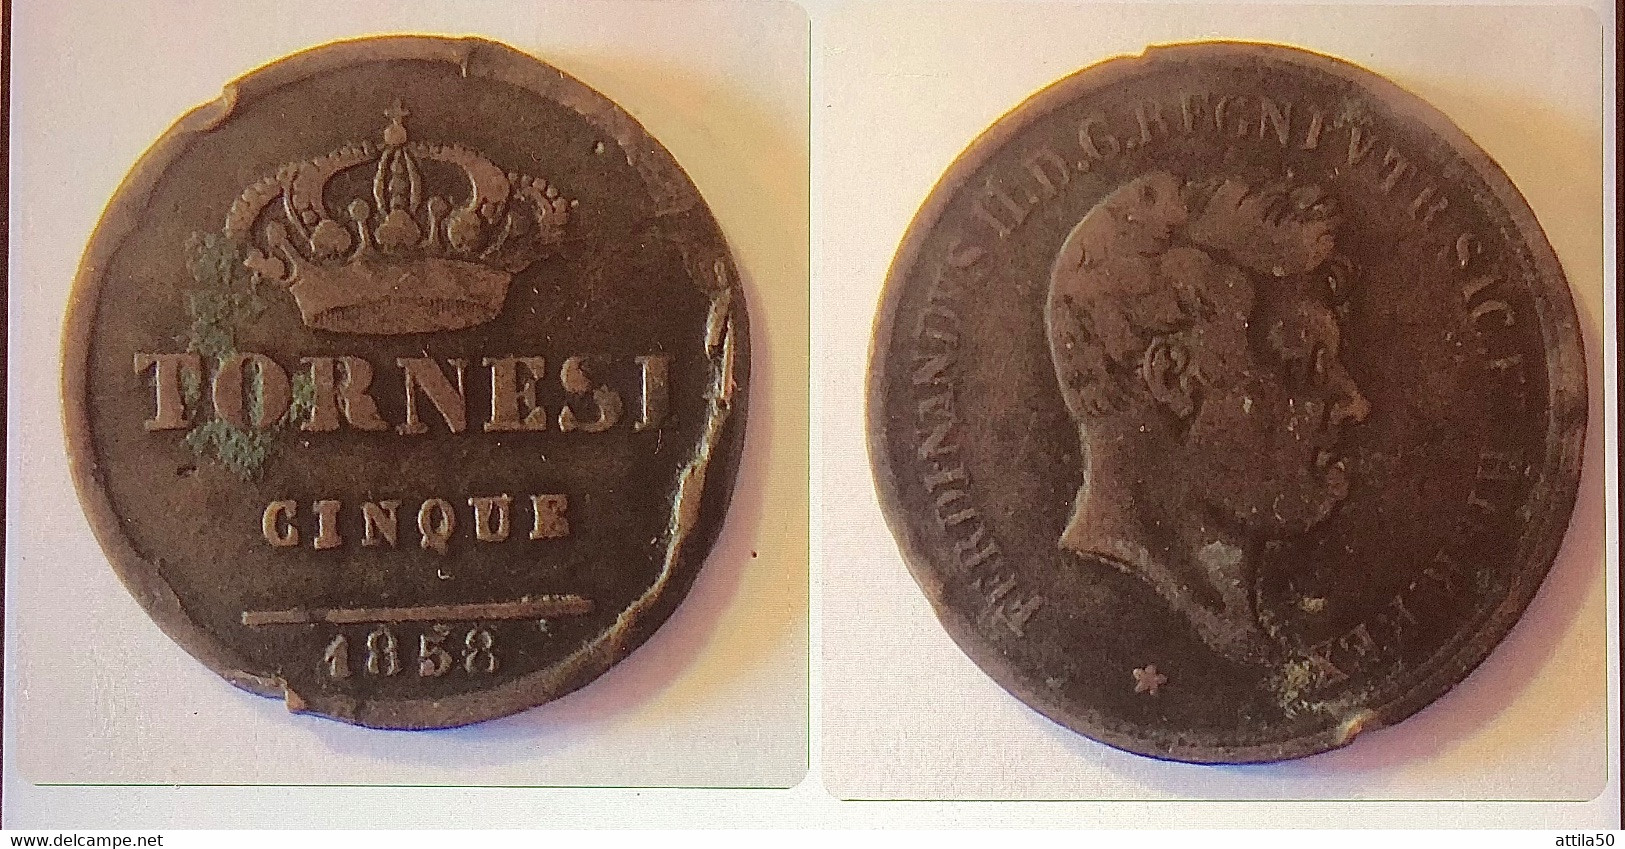 NAPOLI- Ferdinando II Di BORBONE- TORNESI CINQUE 1858 - NC. - Two Sicilia